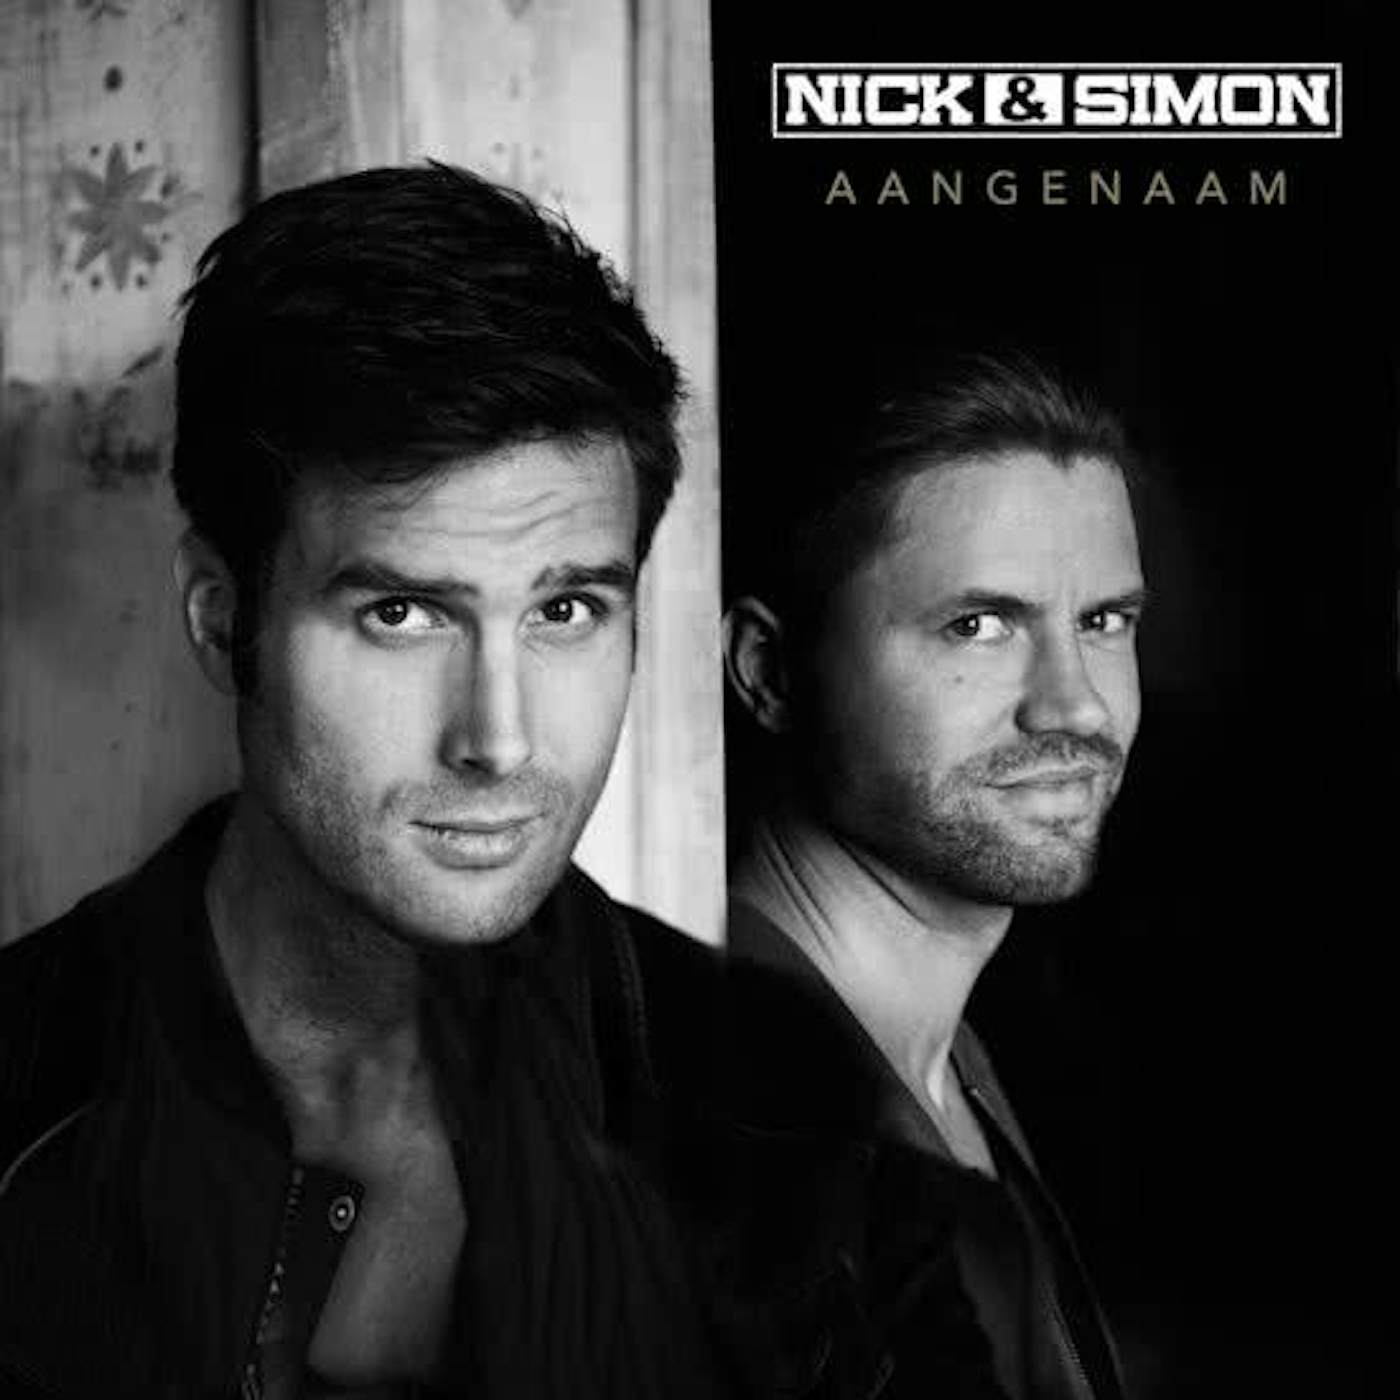 Nick & Simon AANGENAAM CD